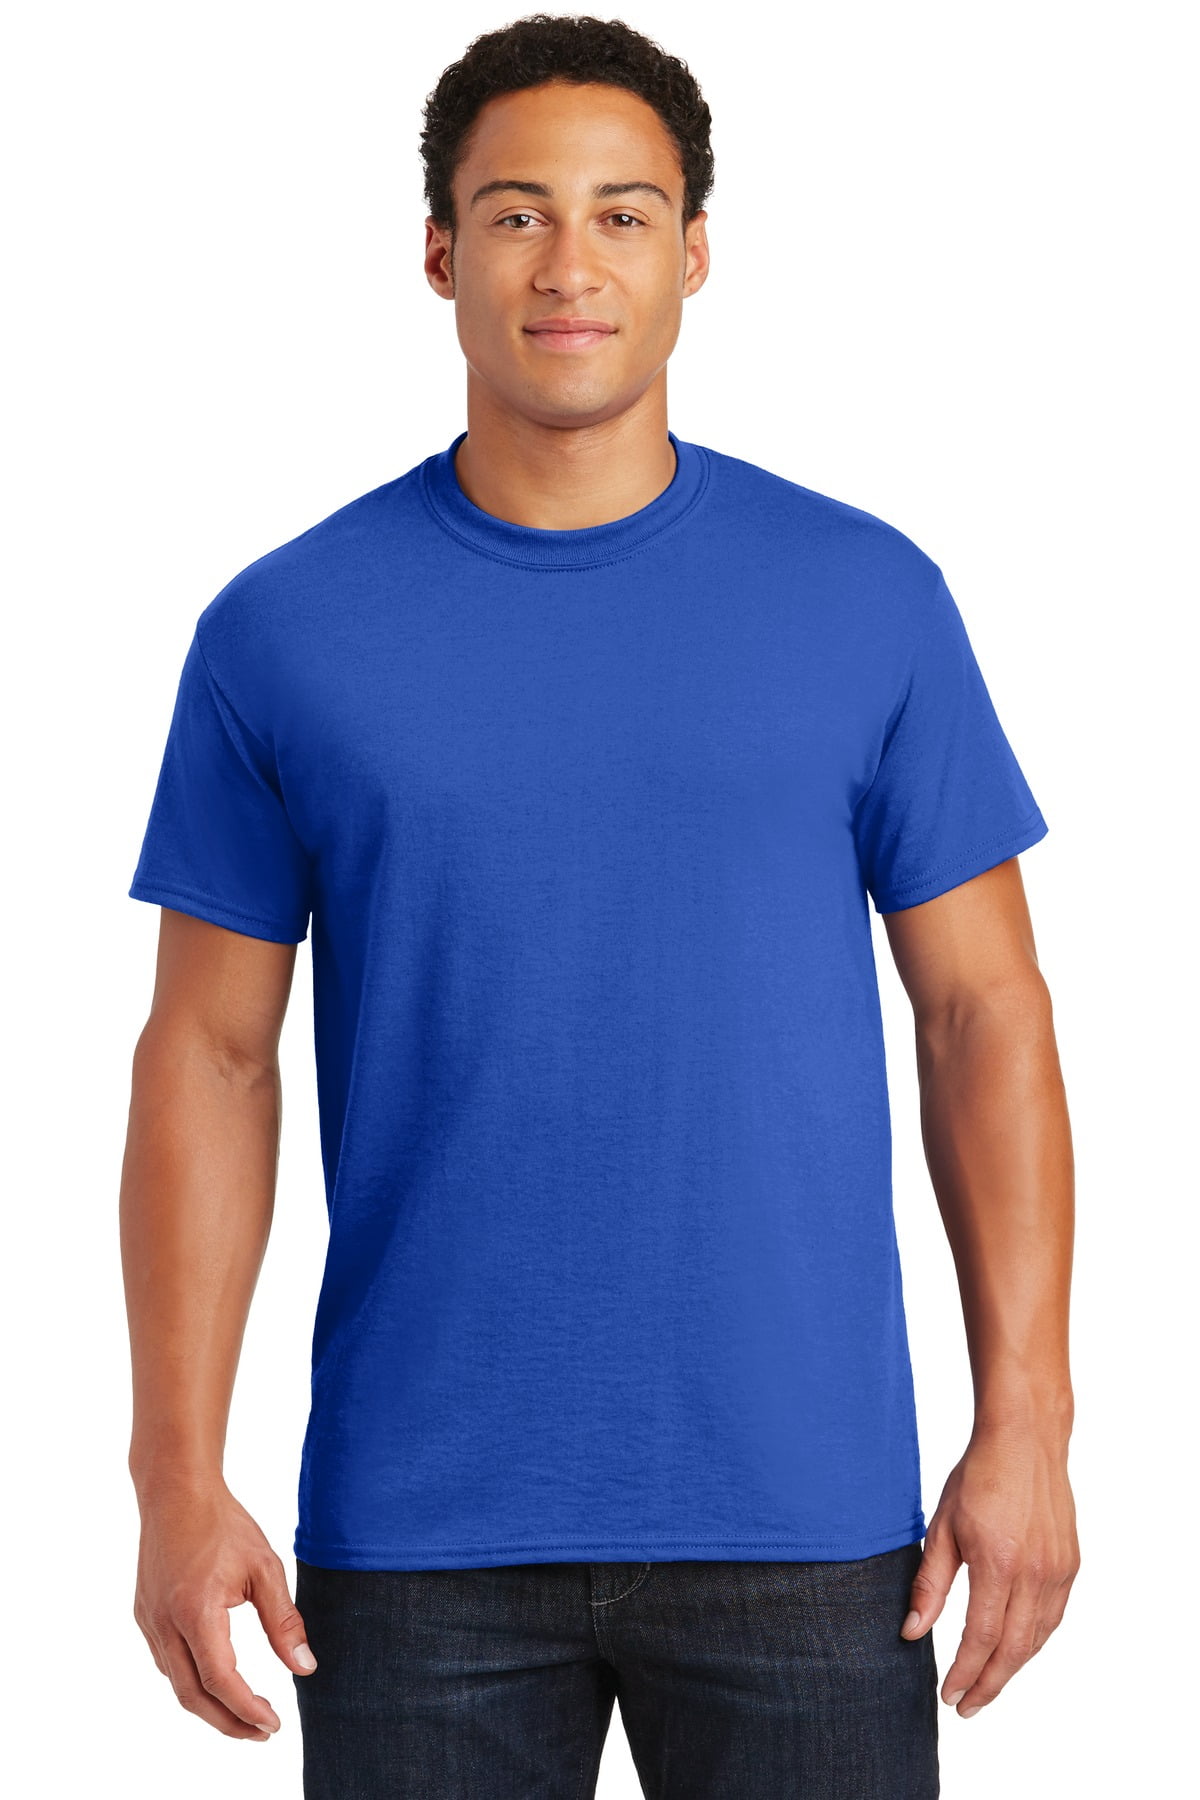 DryBlend Cotton/50 T-Shirt Walmart.com